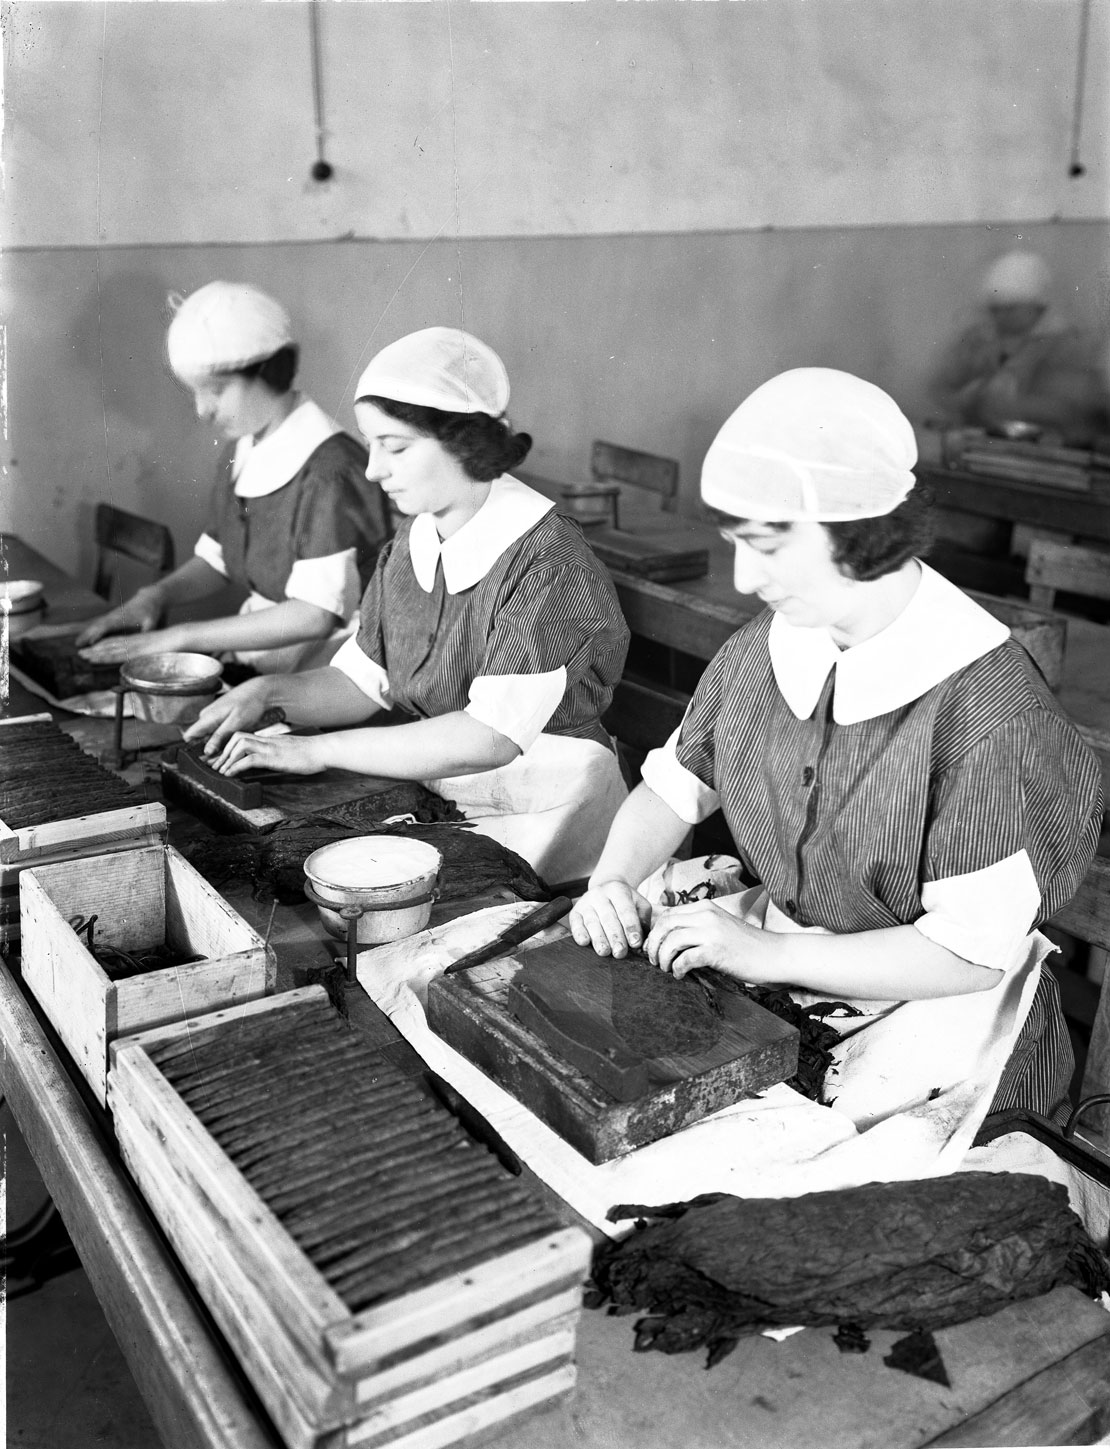 Toscano Firenze 1935 - Lavorazione sigari a mano